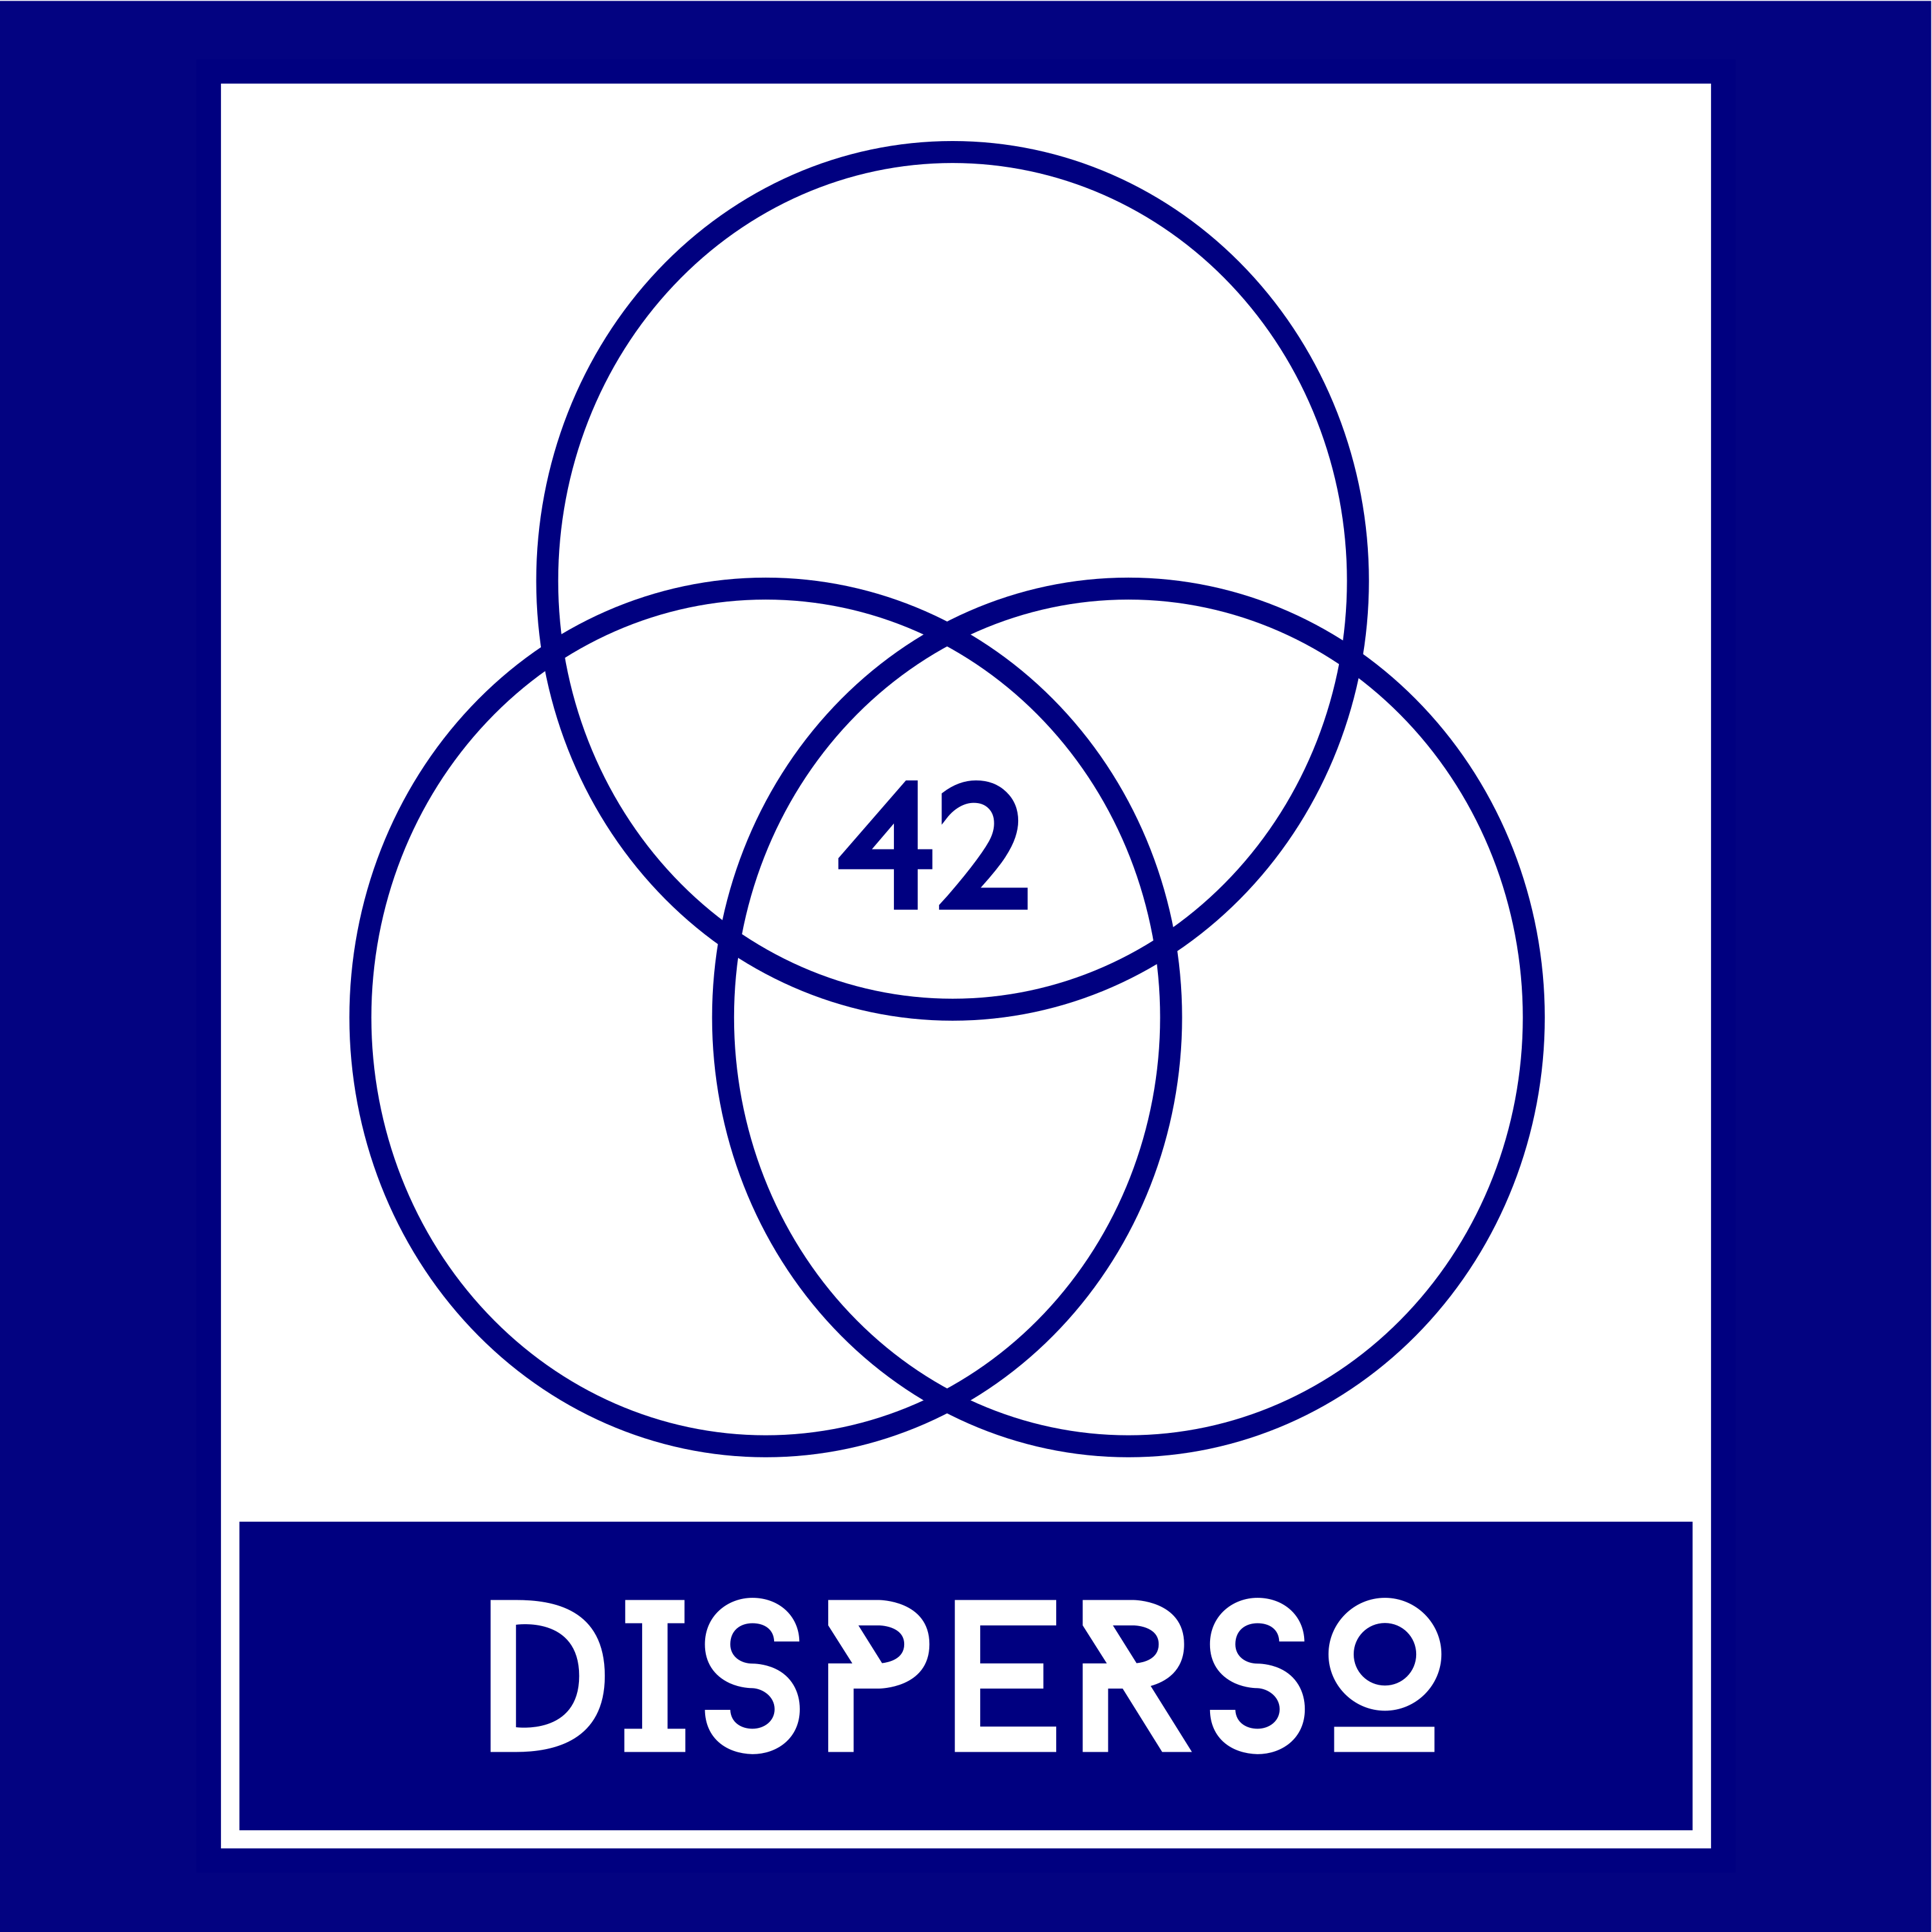 Disperso